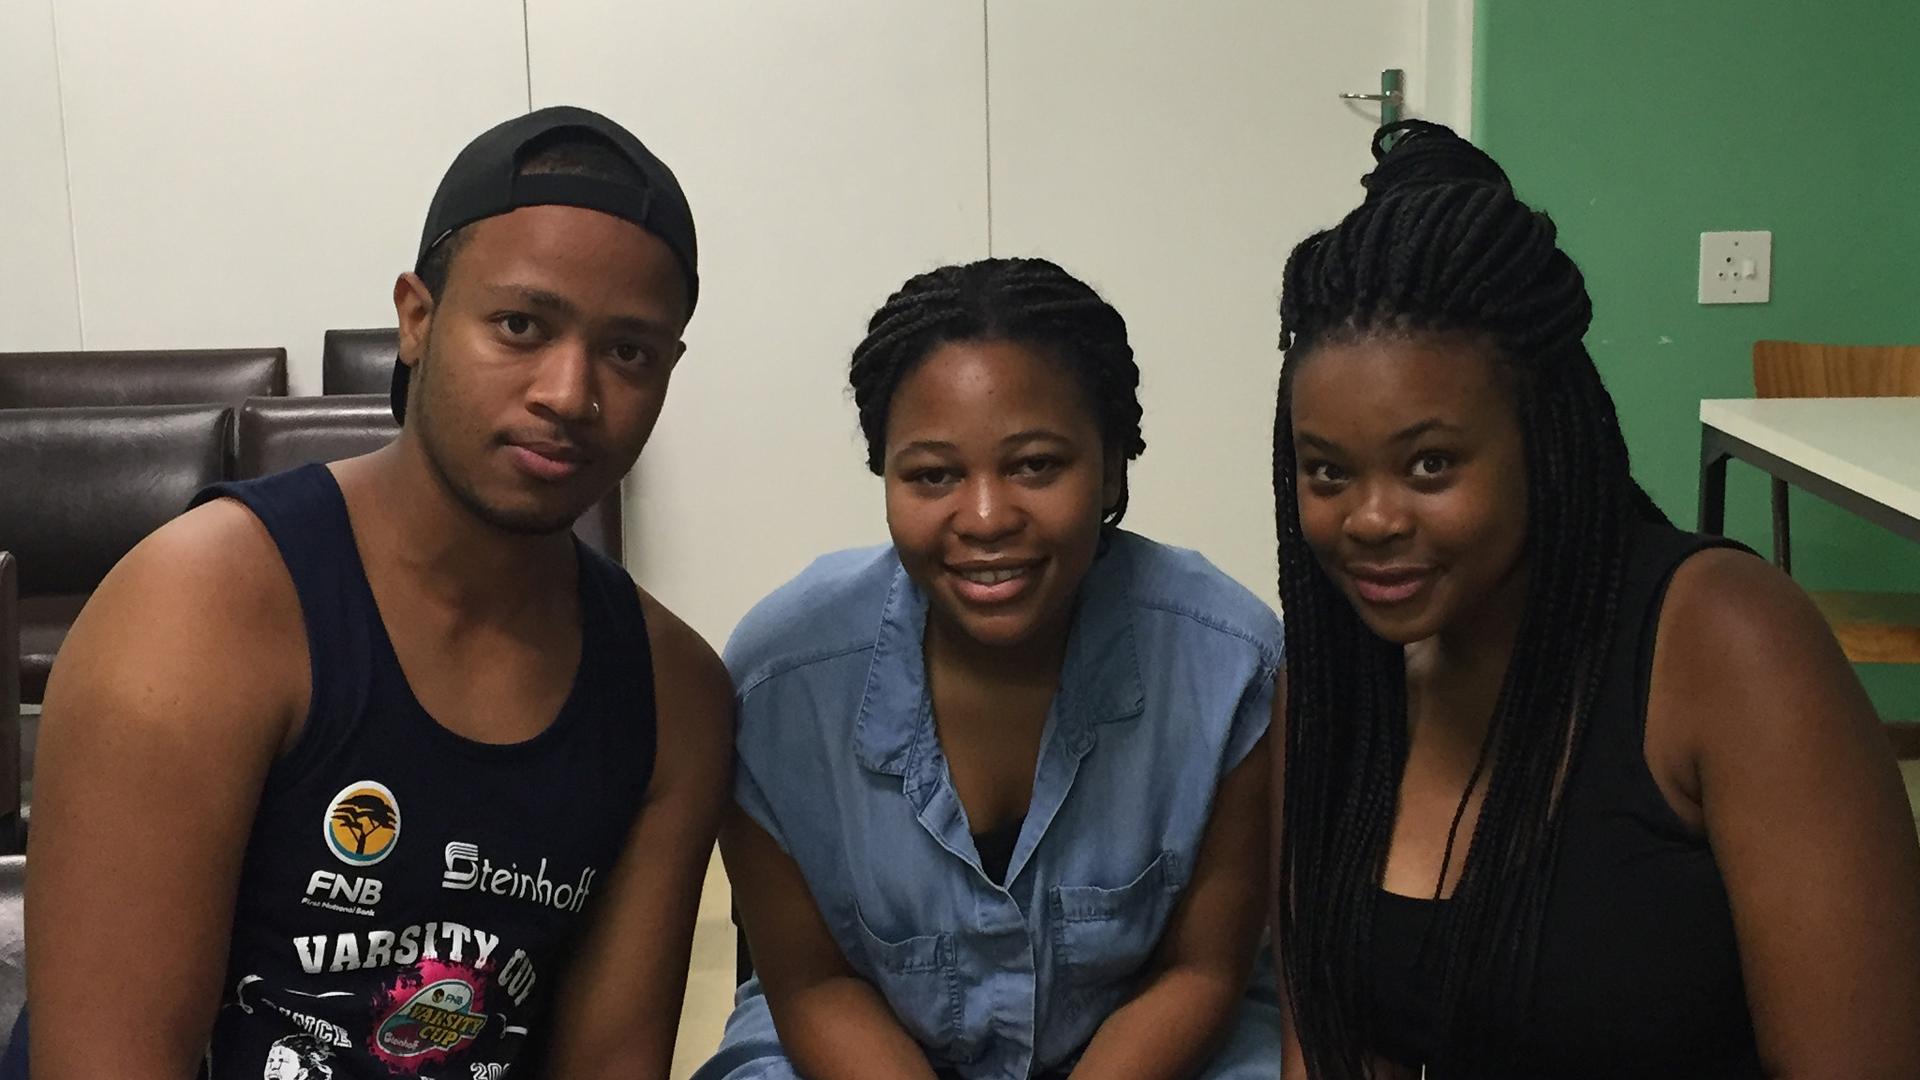 University of Cape Town student activists Nico Nomyayi (l), Morategi Kale (c) and Zanele Kabane (r). "Black students are tired all over the world," Nomyayi says.